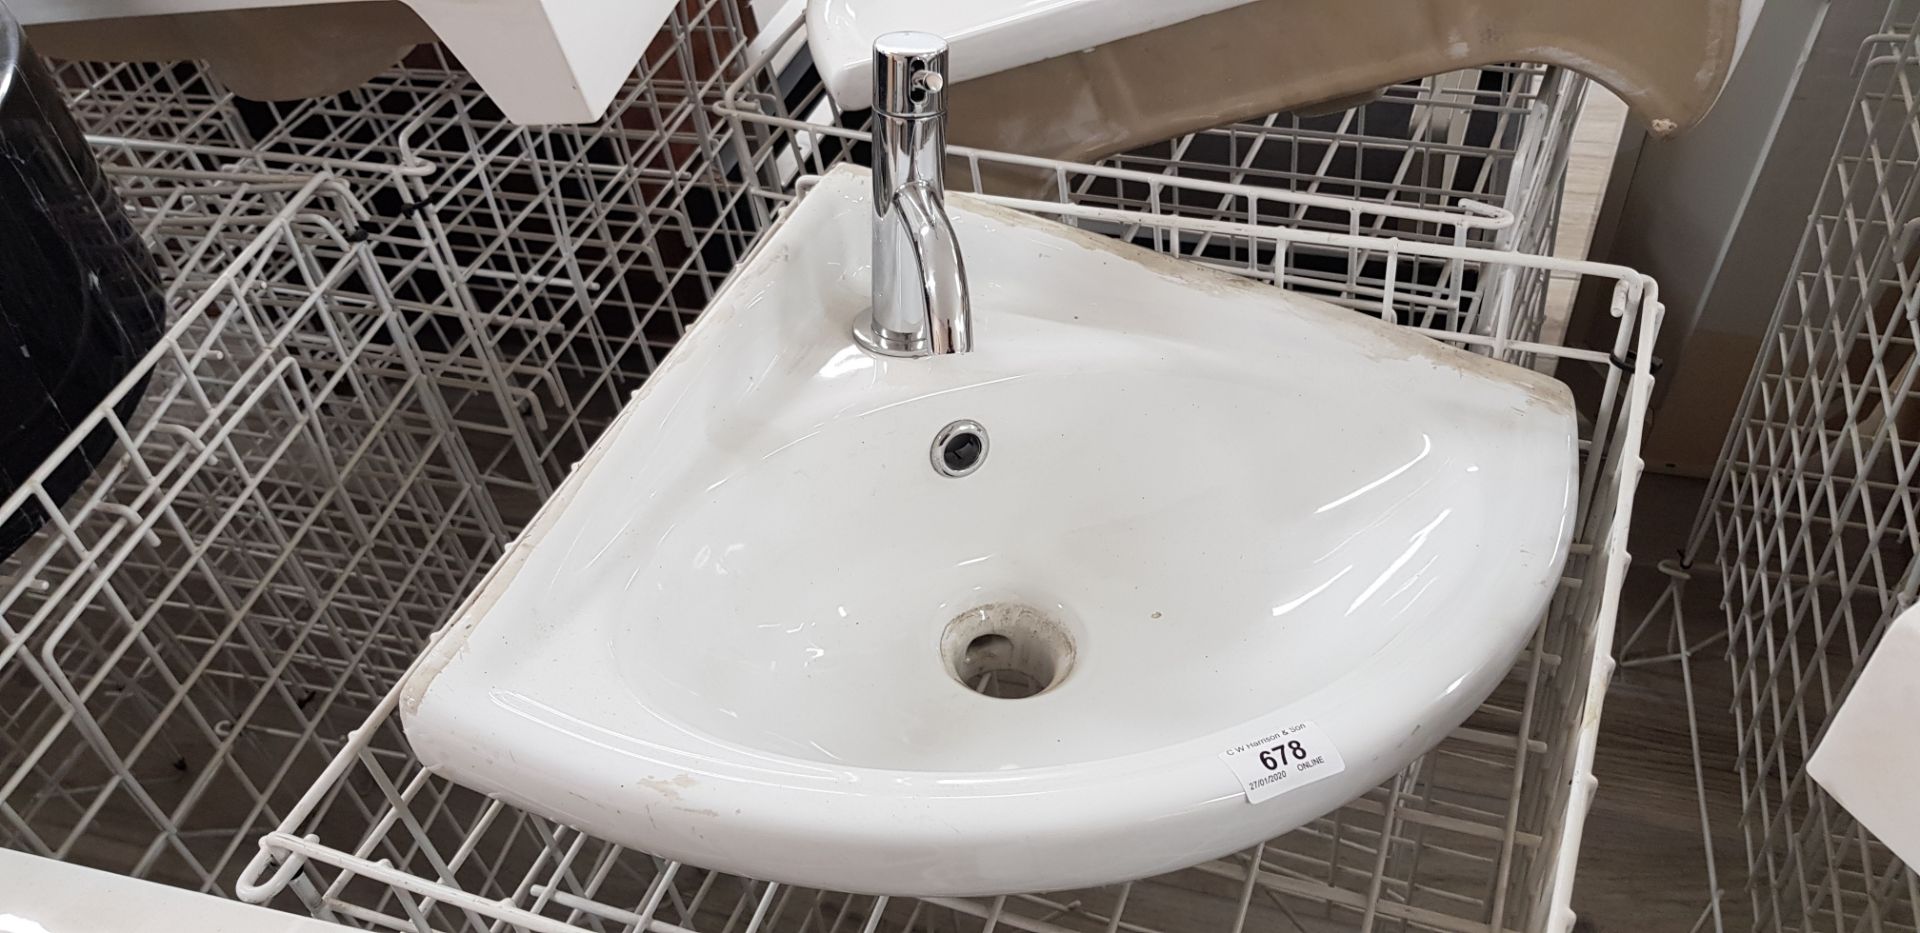 360 x 360mm ceramic corner basin & modern tap